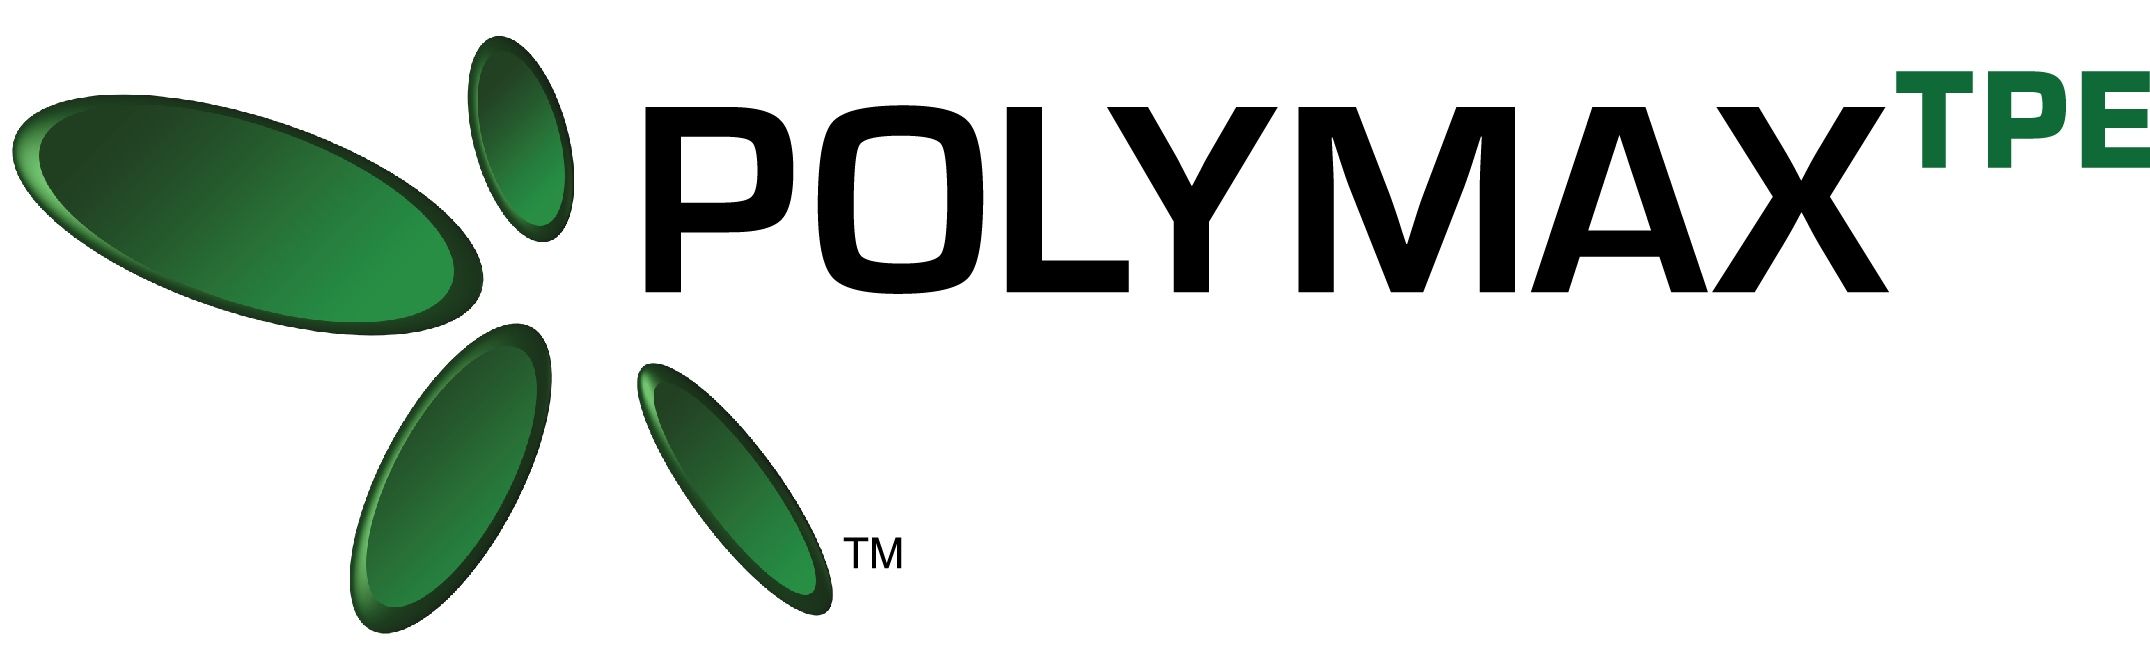 Polymax TPE Logo